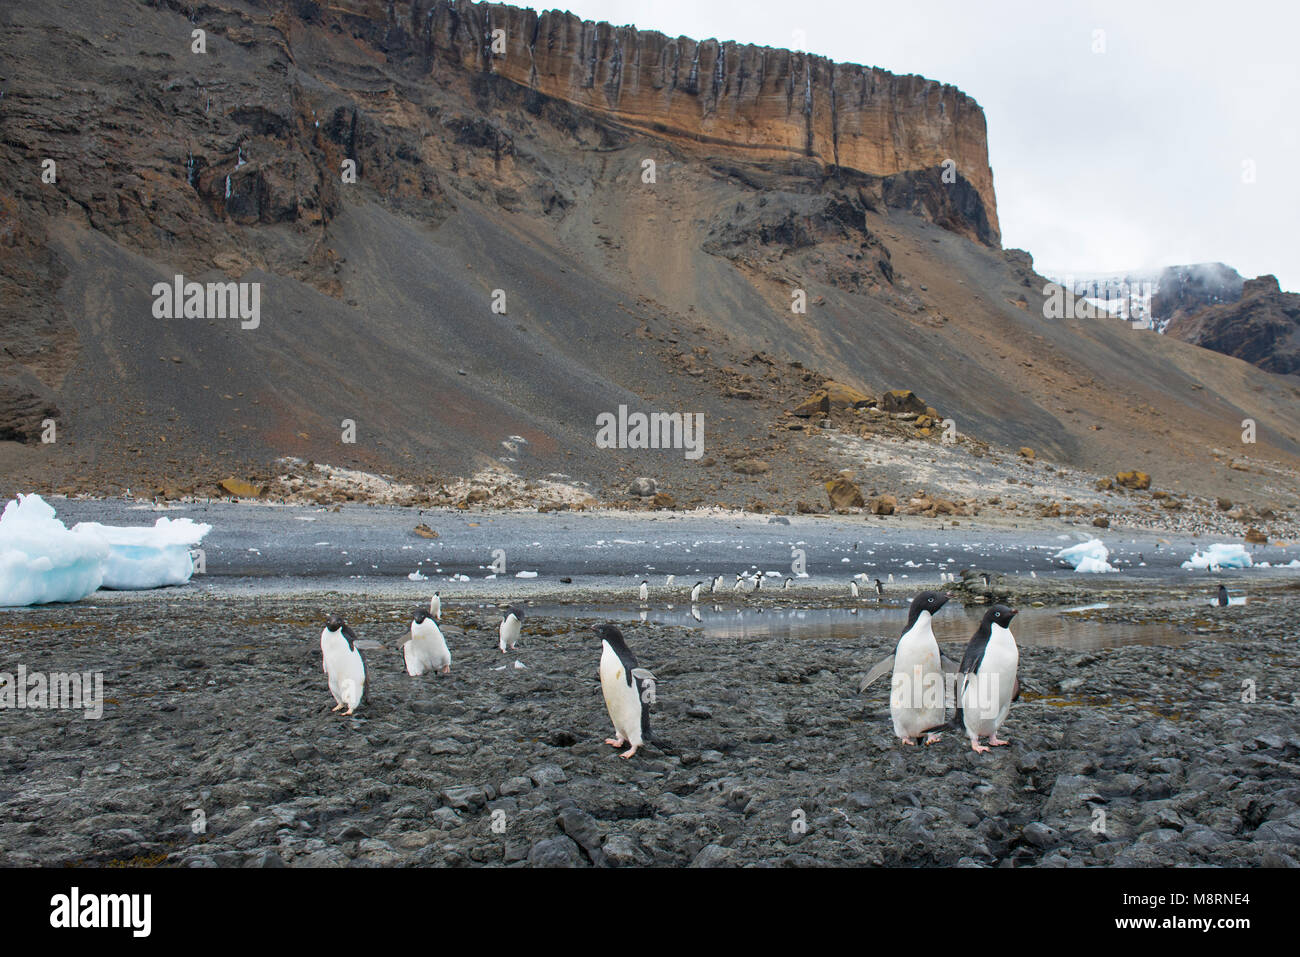 Un groupe de manchots adélies à pied le long de la côte rocheuse à Brown Bluff, l'Antarctique. Banque D'Images